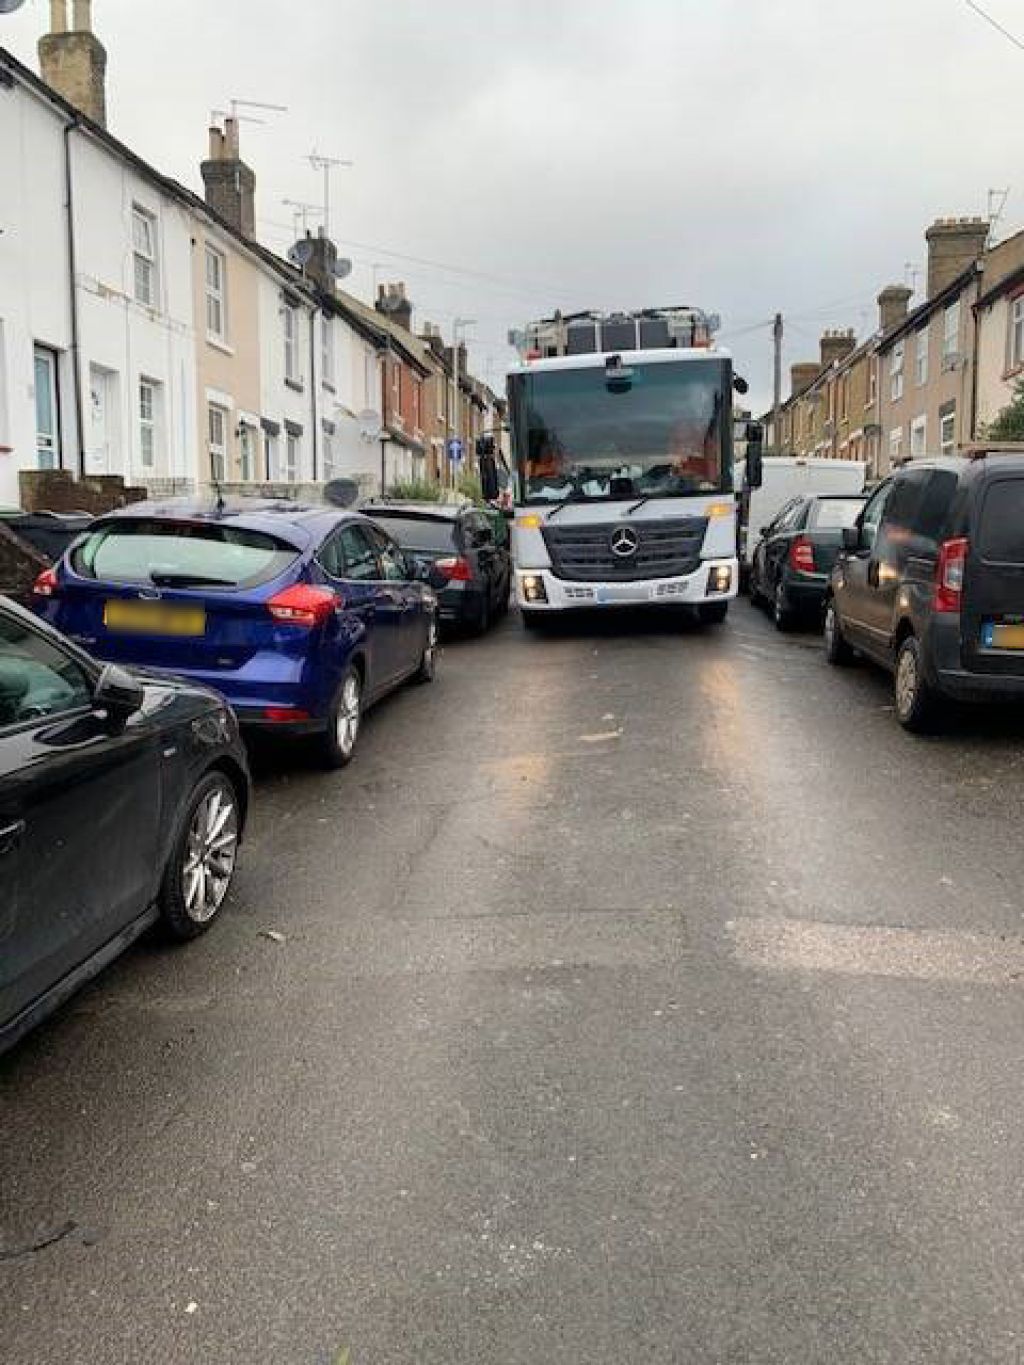  Don’t block roads urges Maidstone Borough Council 